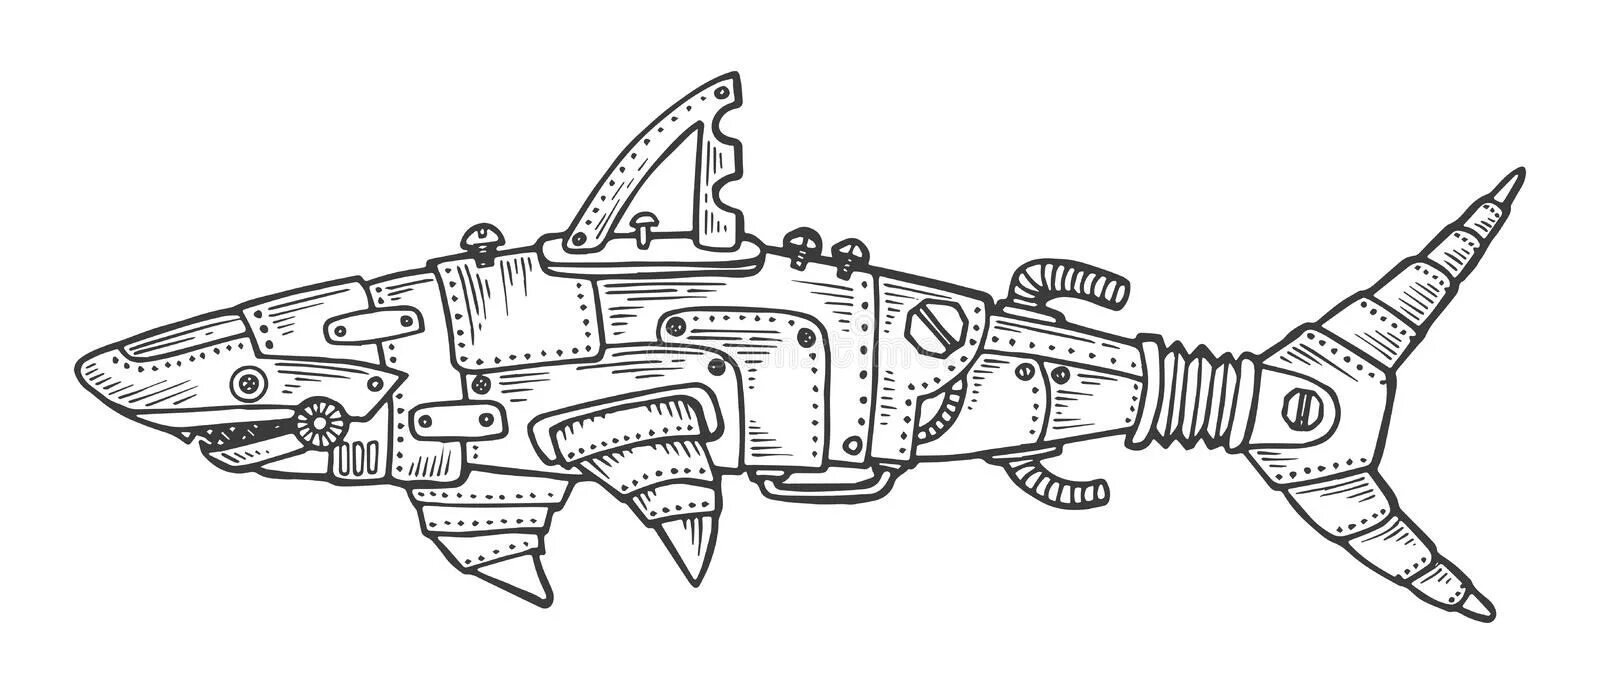 Акула робот #2